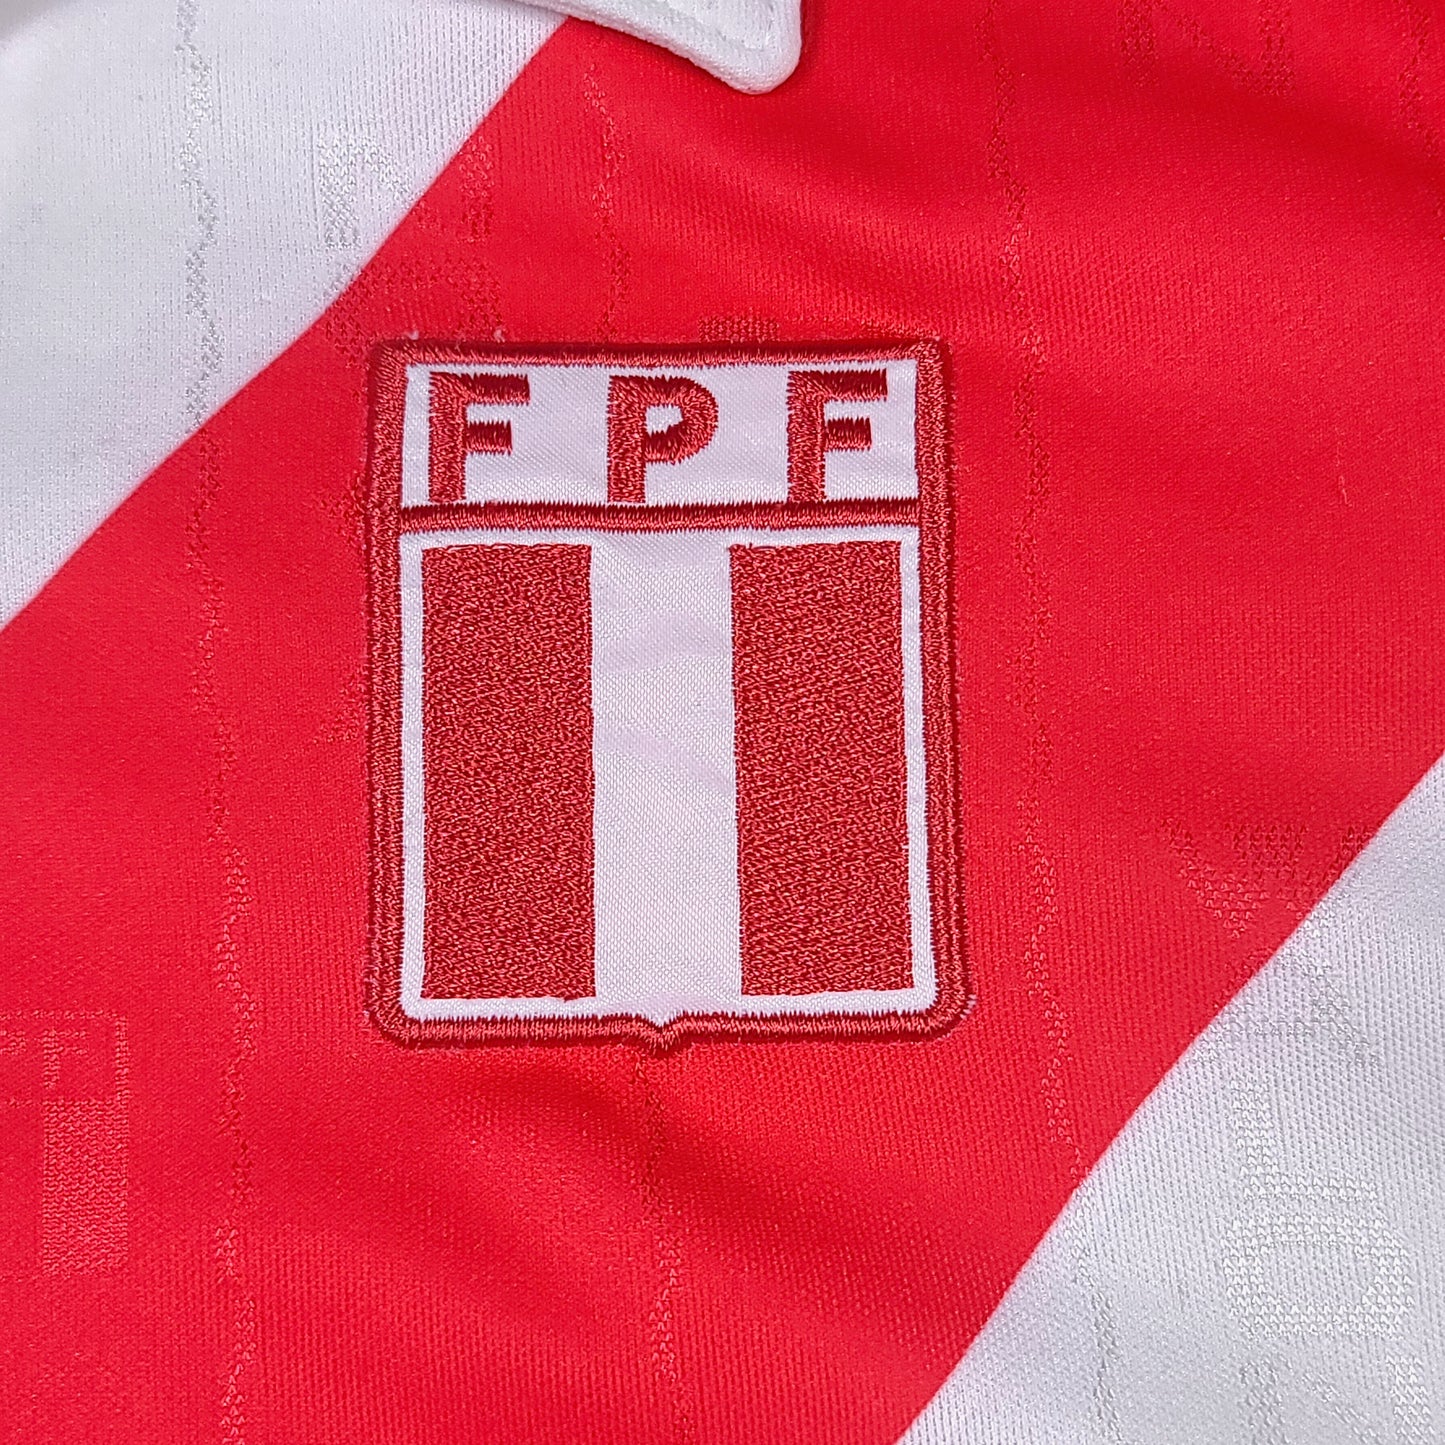 Vintage Peru 2002 Walon Soccer Jersey